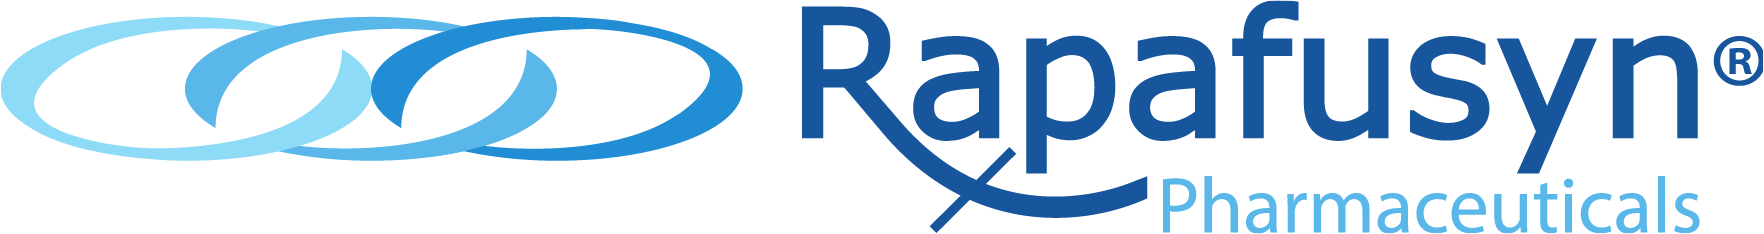 40974 - Rapafusyn - logo